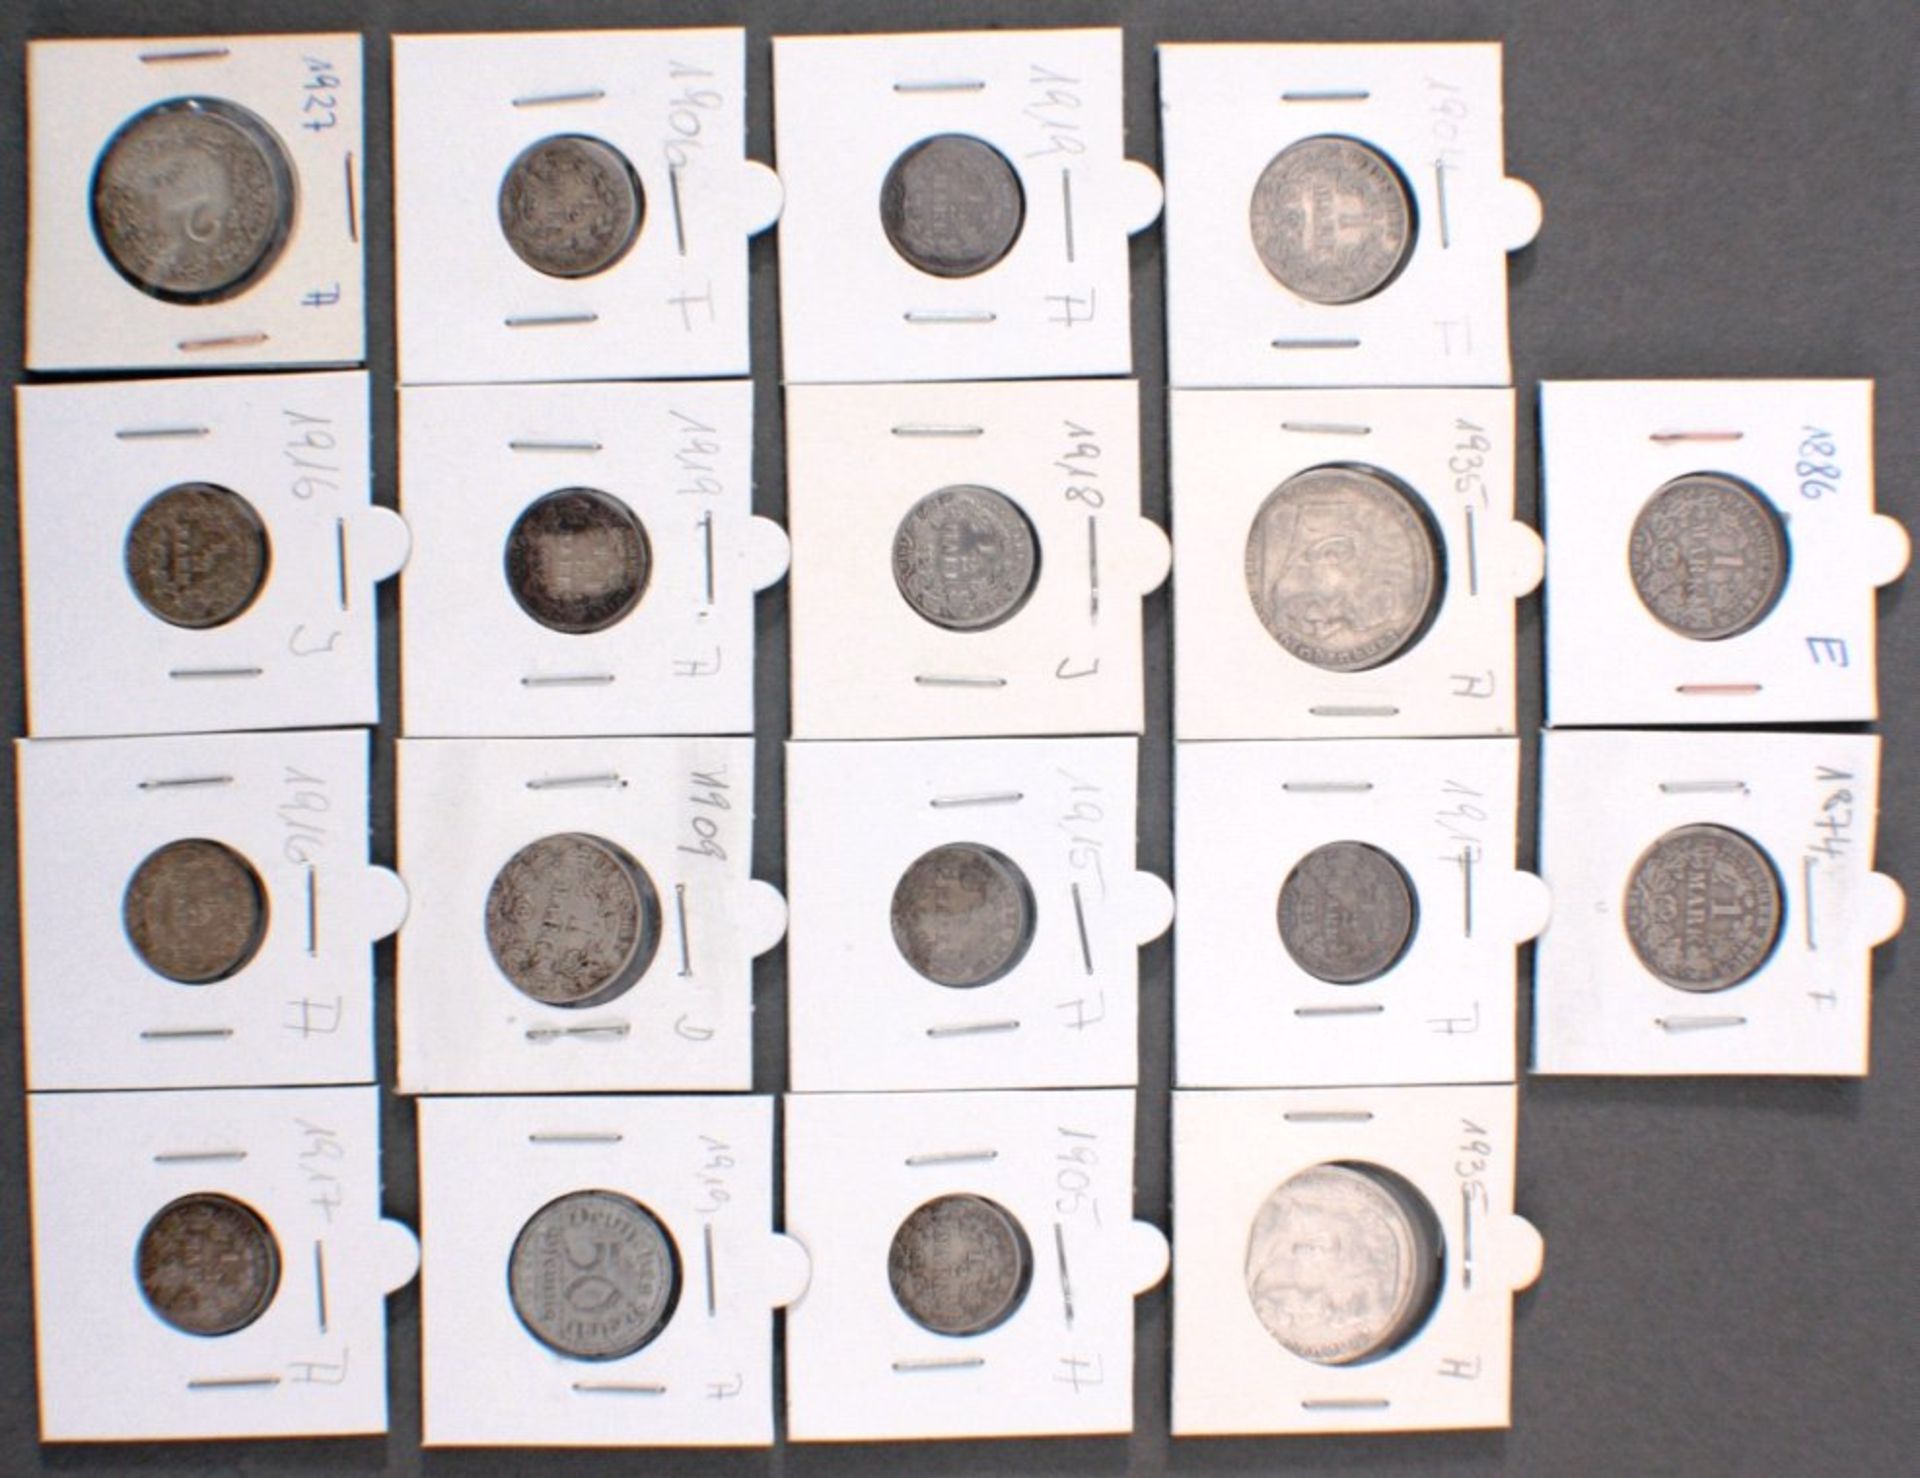 Konvolut Silbermünzen, ca 75g, Deutsches Reich4 x 1 Mark Deutsches Reich, 11 x 1/2 Mark, 2